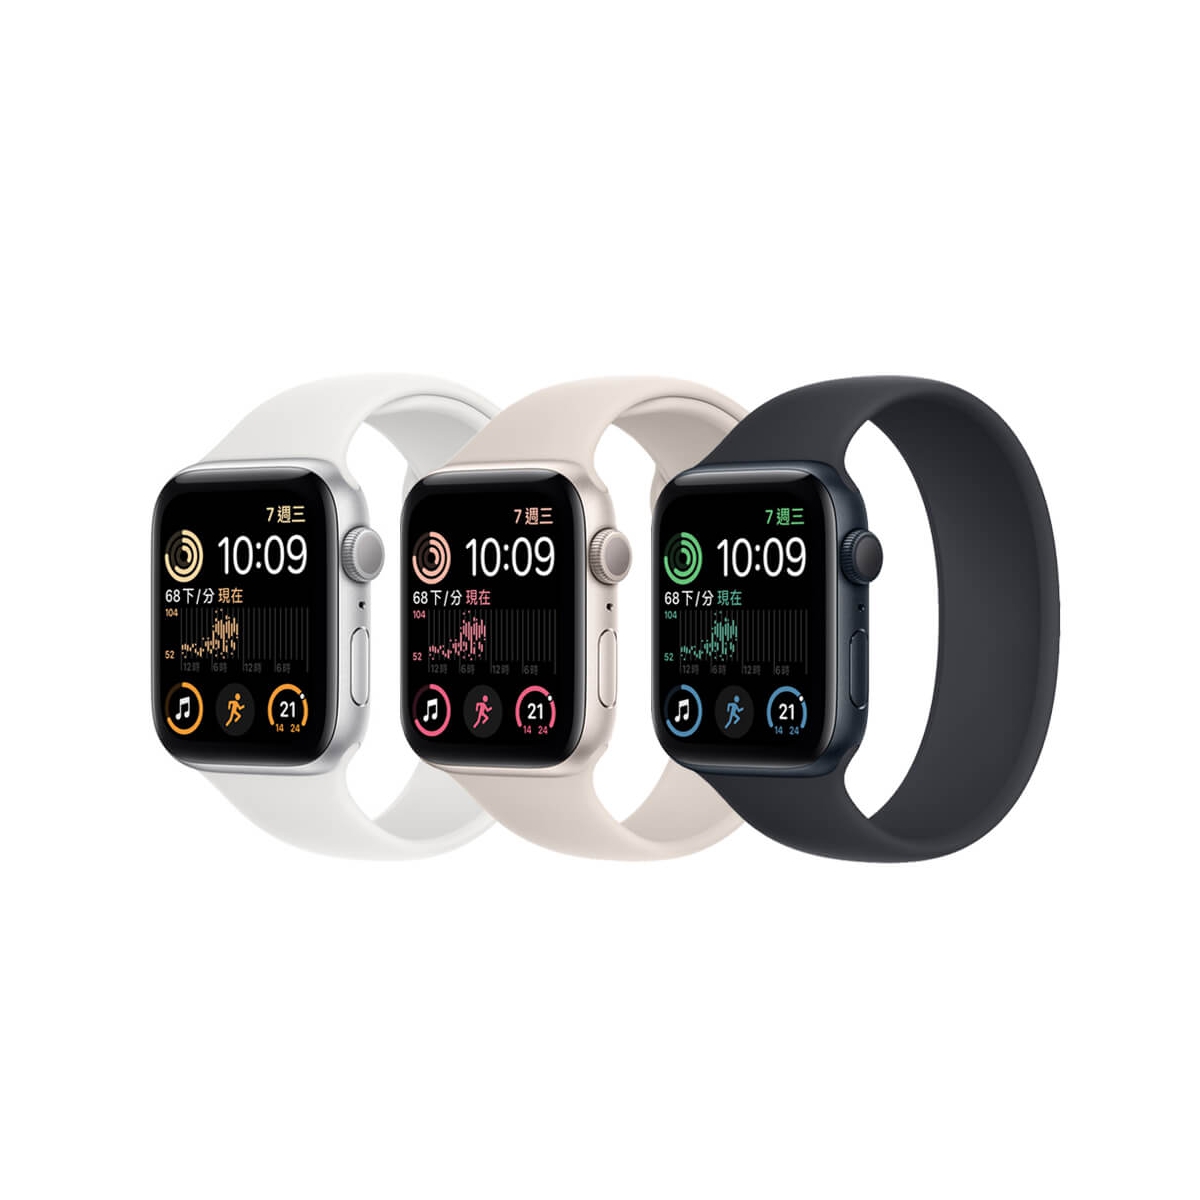 スマートフォン/携帯電話 その他 Apple Watch SE 2代(44mm) GPS 最低價格,規格,跑分,比較及評價|傑昇 